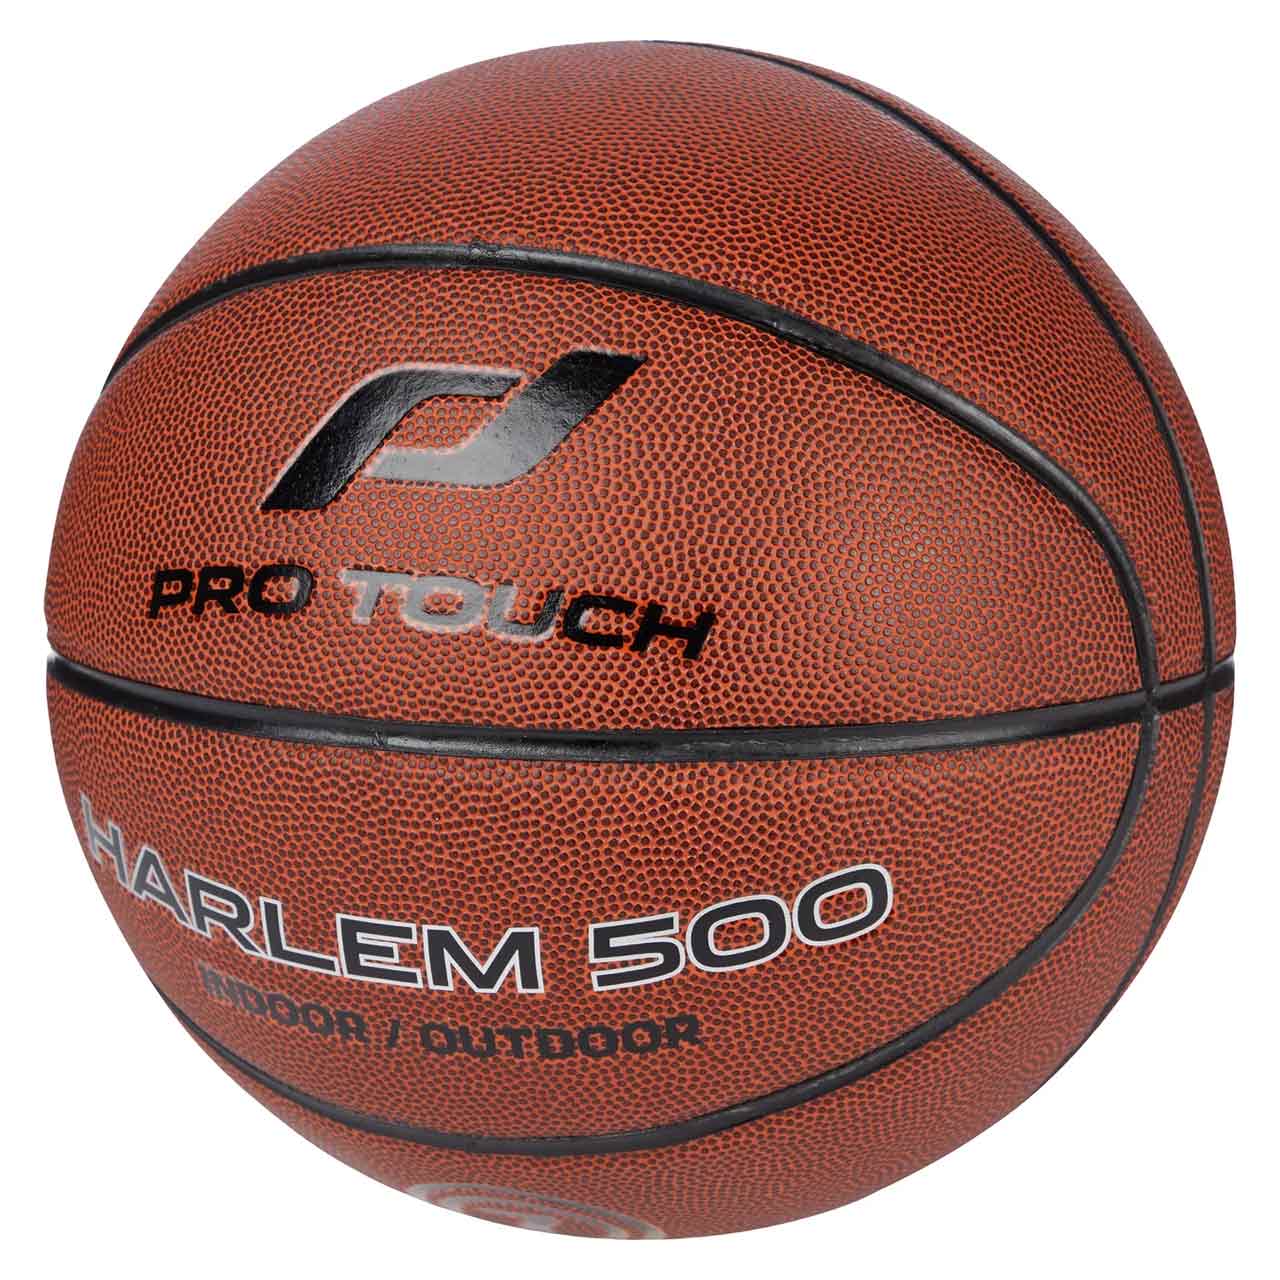 Basketball Harlem 500